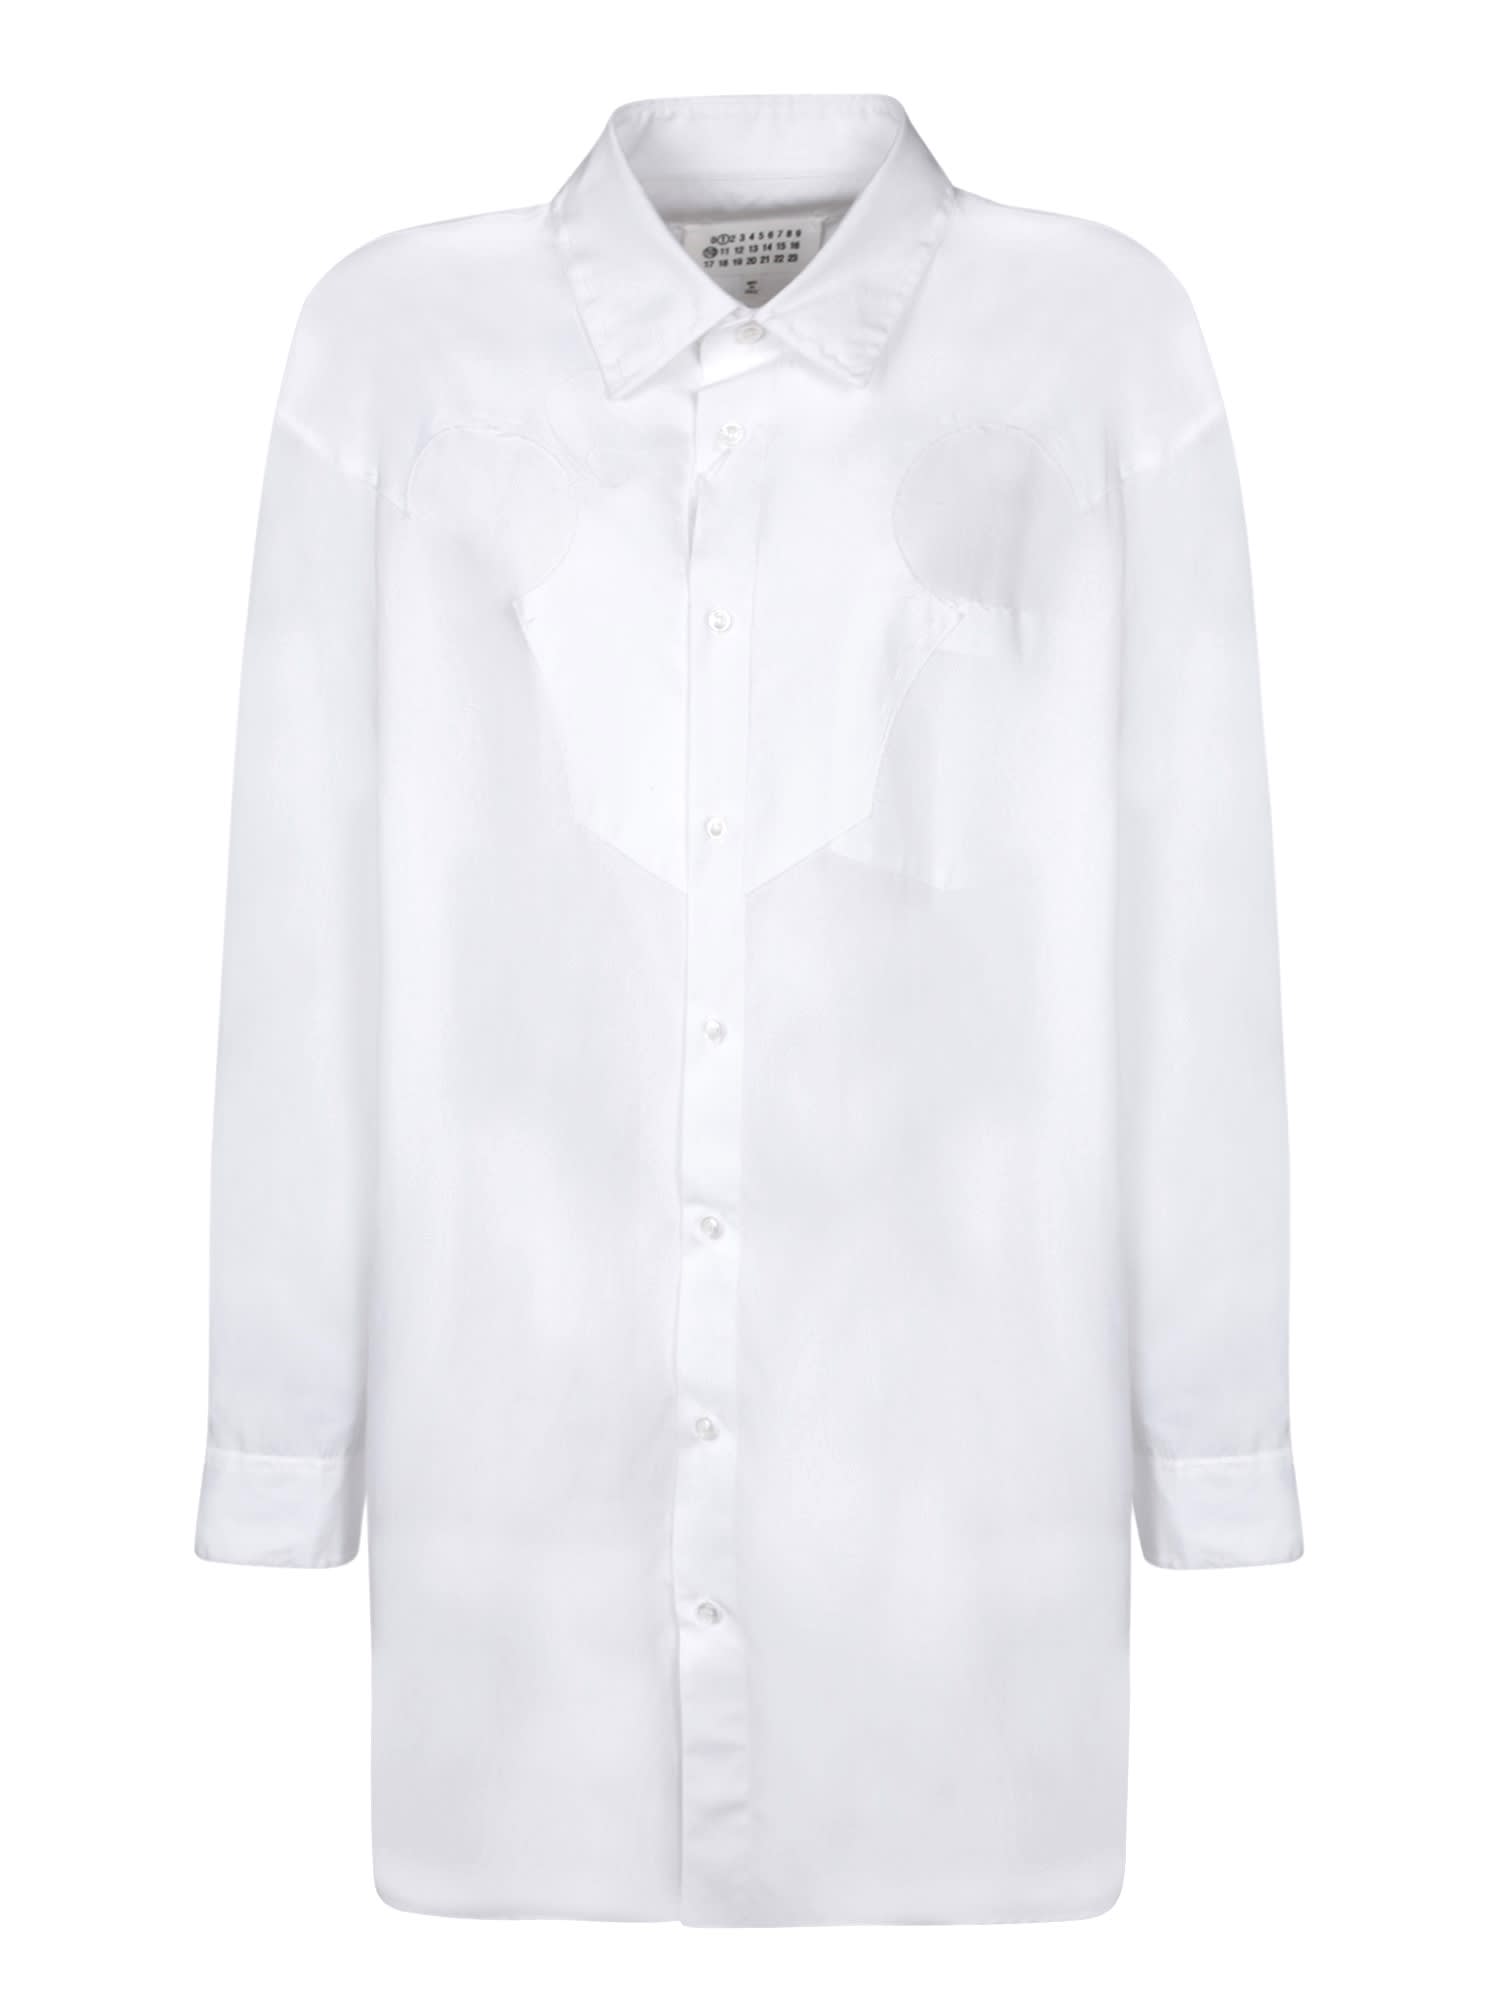 Handle Stitching White Dress Shirt